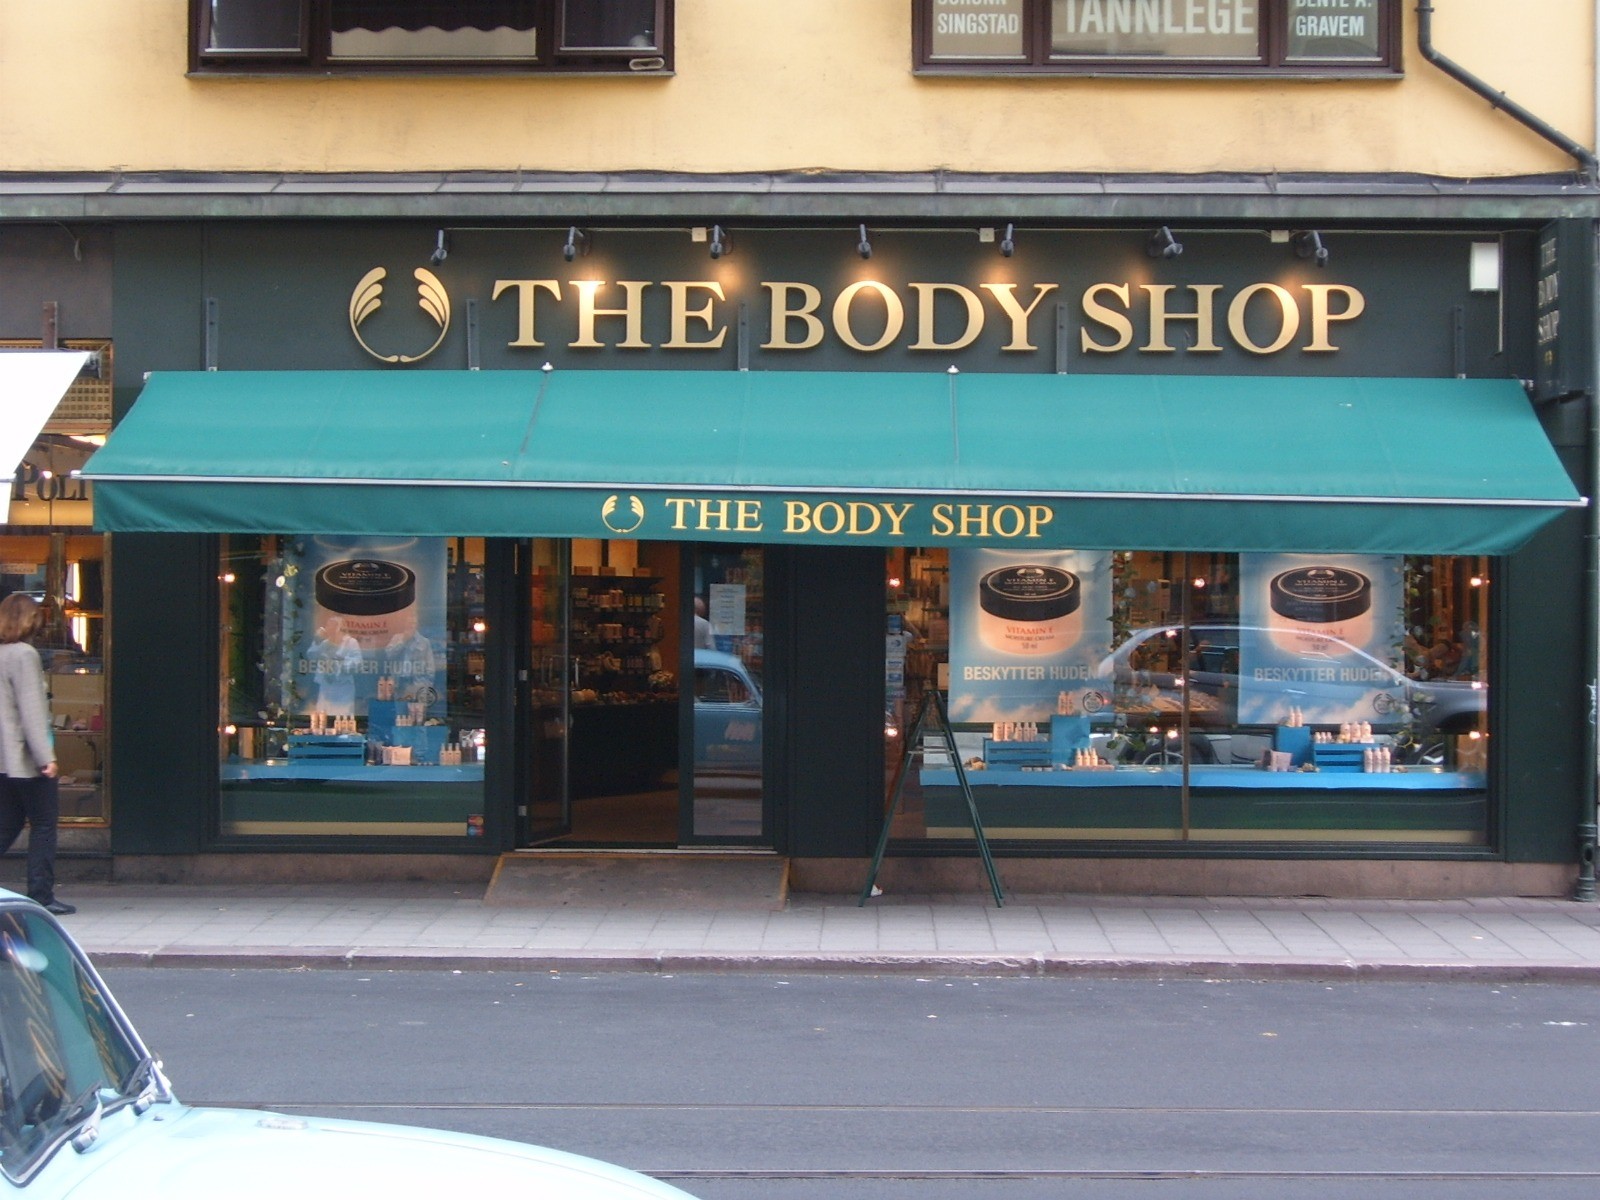 The Body Shop ồ ạt phá sản ở nhiều nước, chi nhánh Việt Nam ra sao?- Ảnh 1.